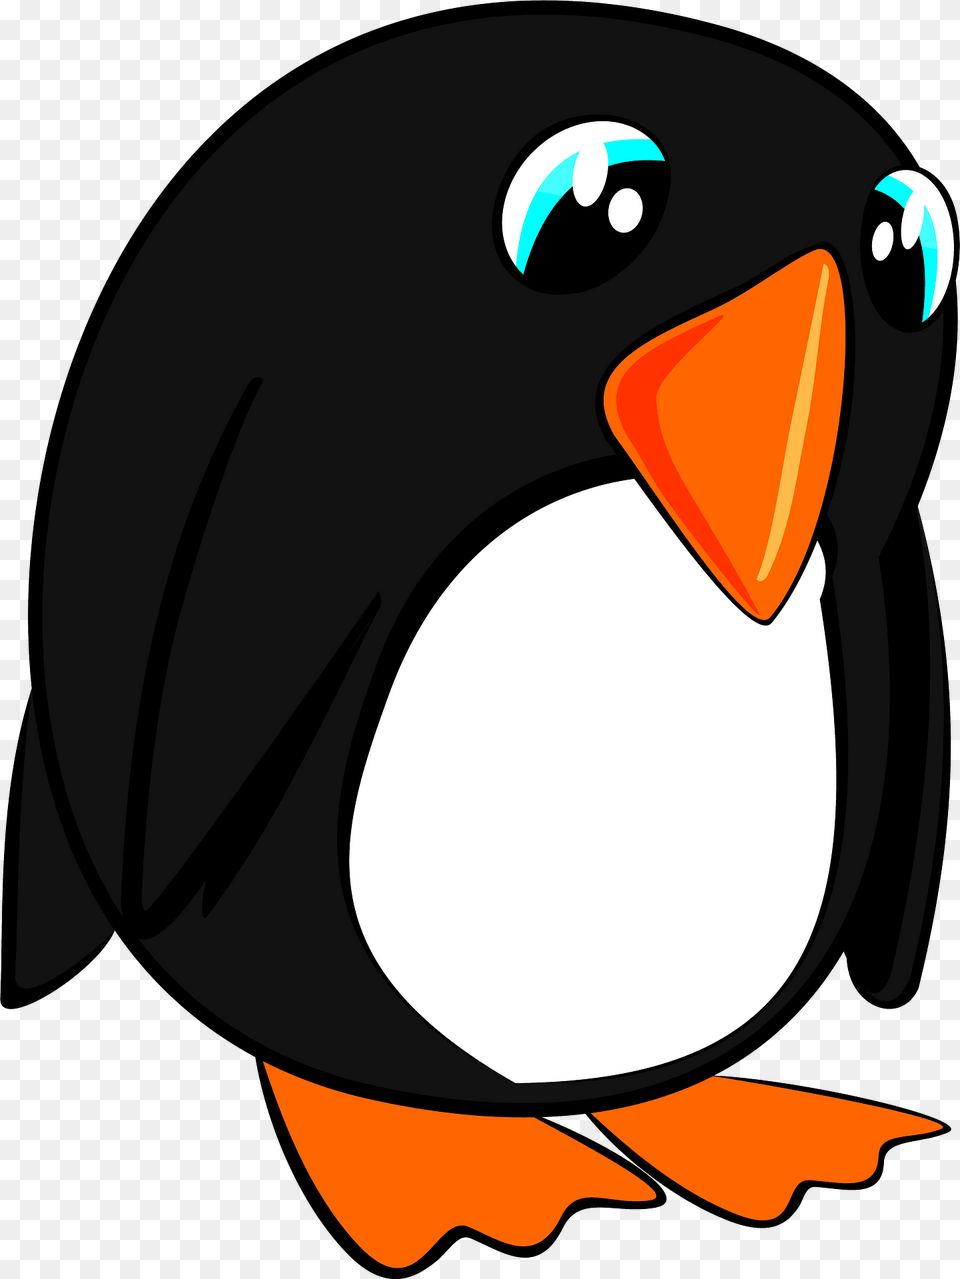 Blue Eyed Cartoon Penguin Clipart, Animal, Bird, Clothing, Hardhat Png Image